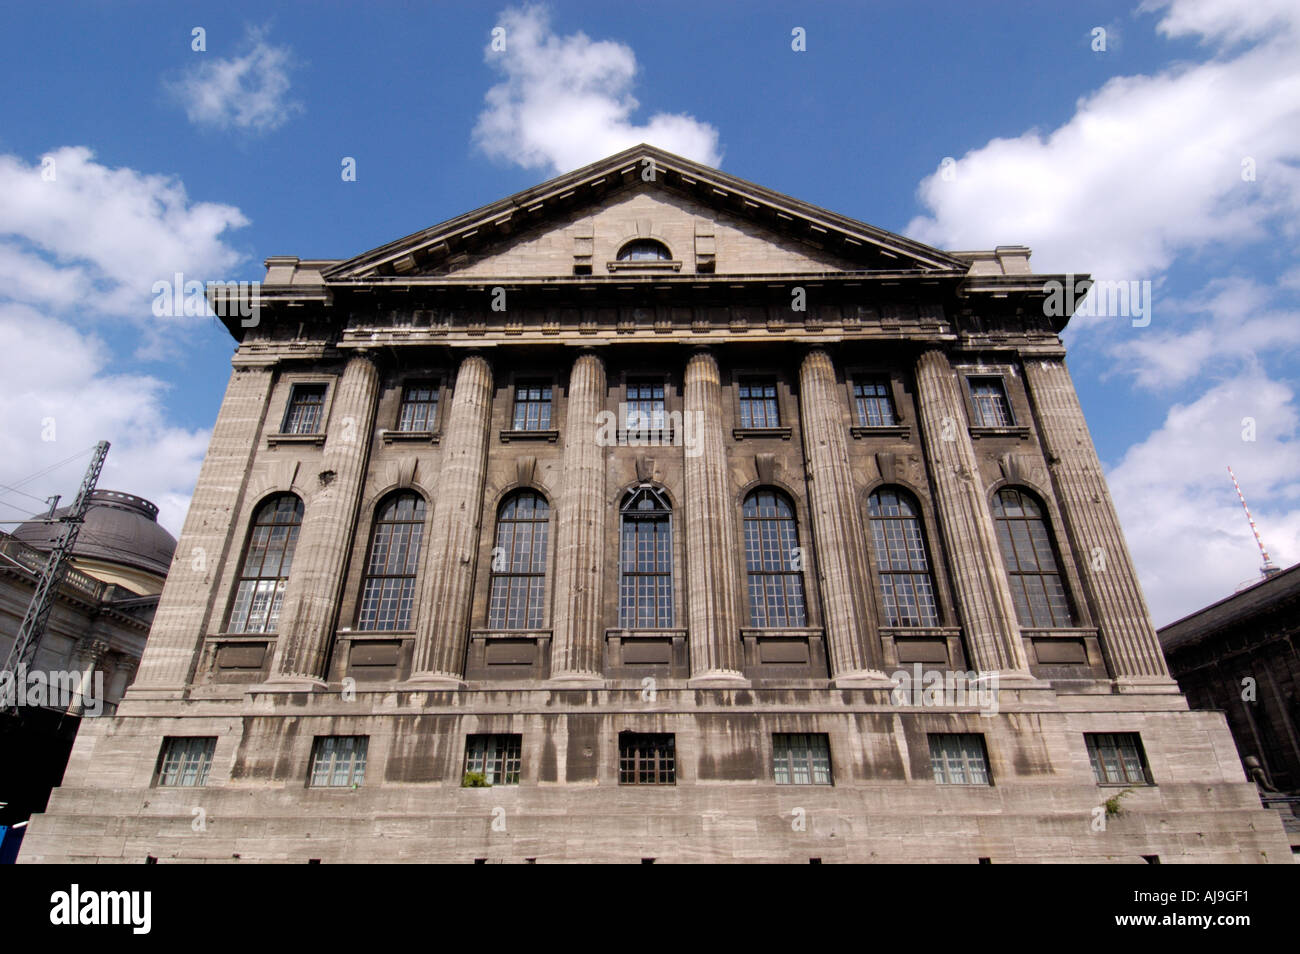 Façade classique du Musée Pergamon de Berlin Allemagne Banque D'Images